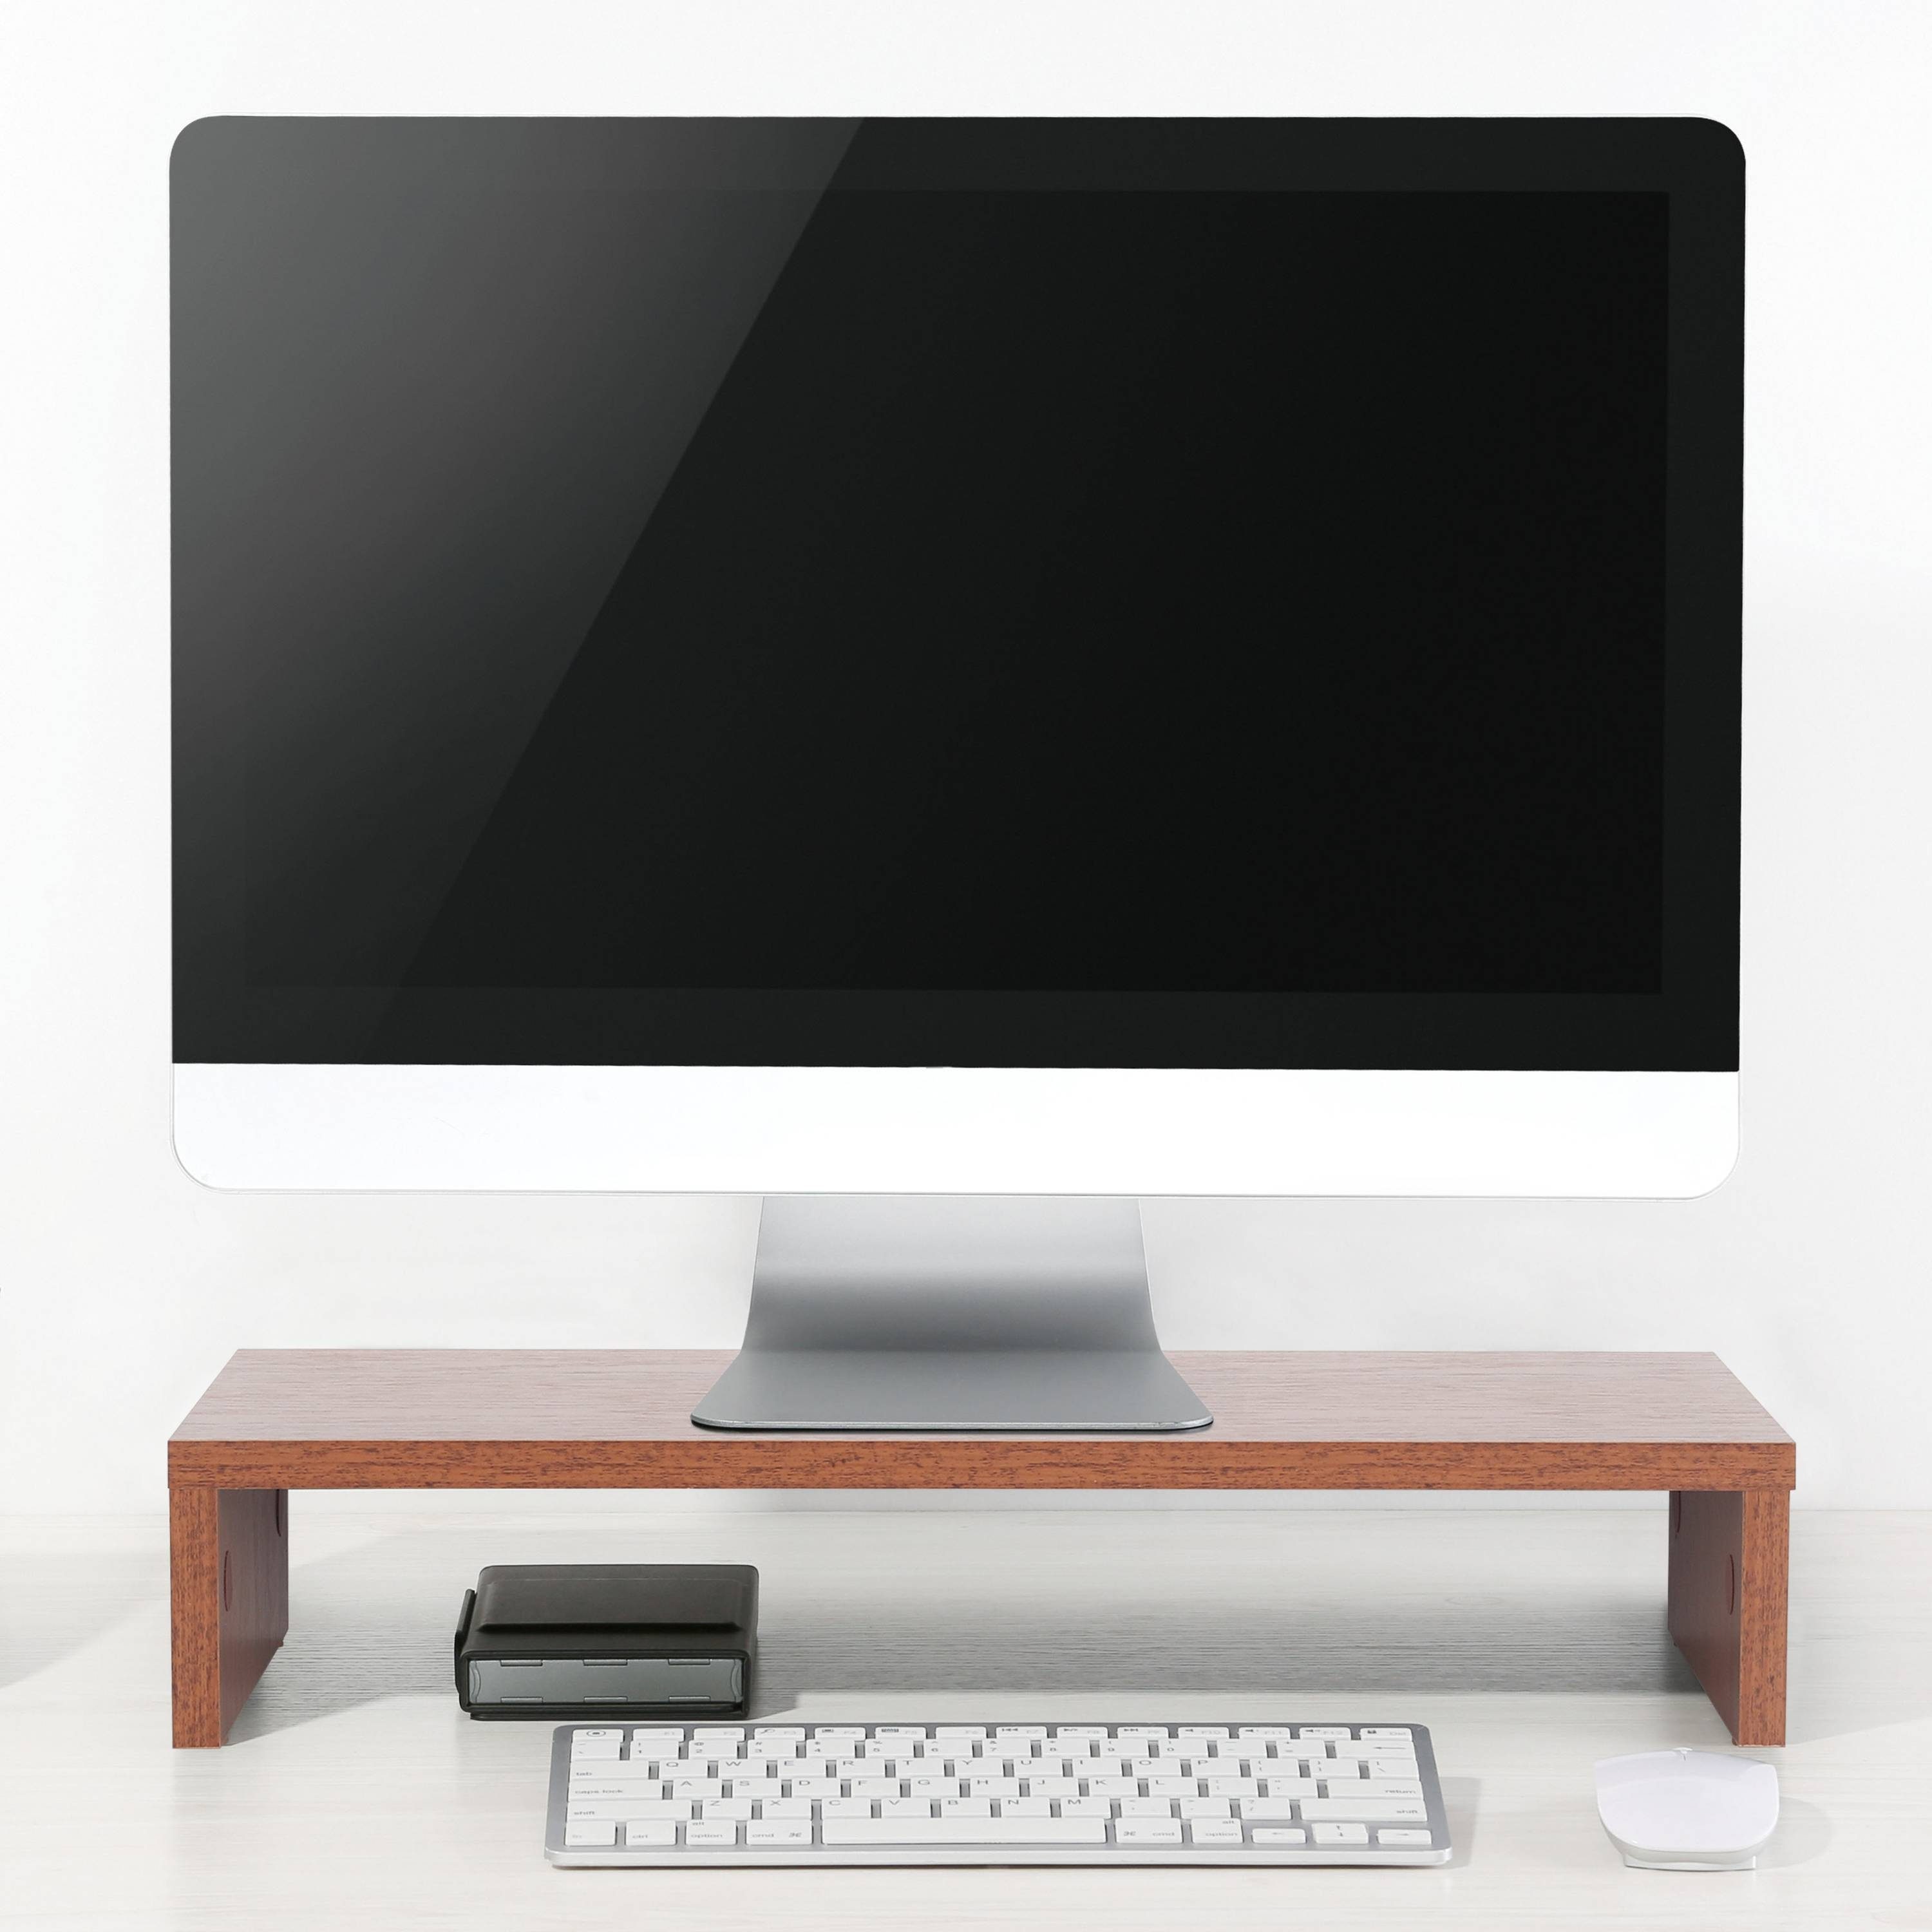 Tisch Monitorerhöhung FS0113-ER, Schreibtisch Eiche-Rustikal Bildschirm Schreibtischaufsatz Monitorständer RICOO Aufsatz